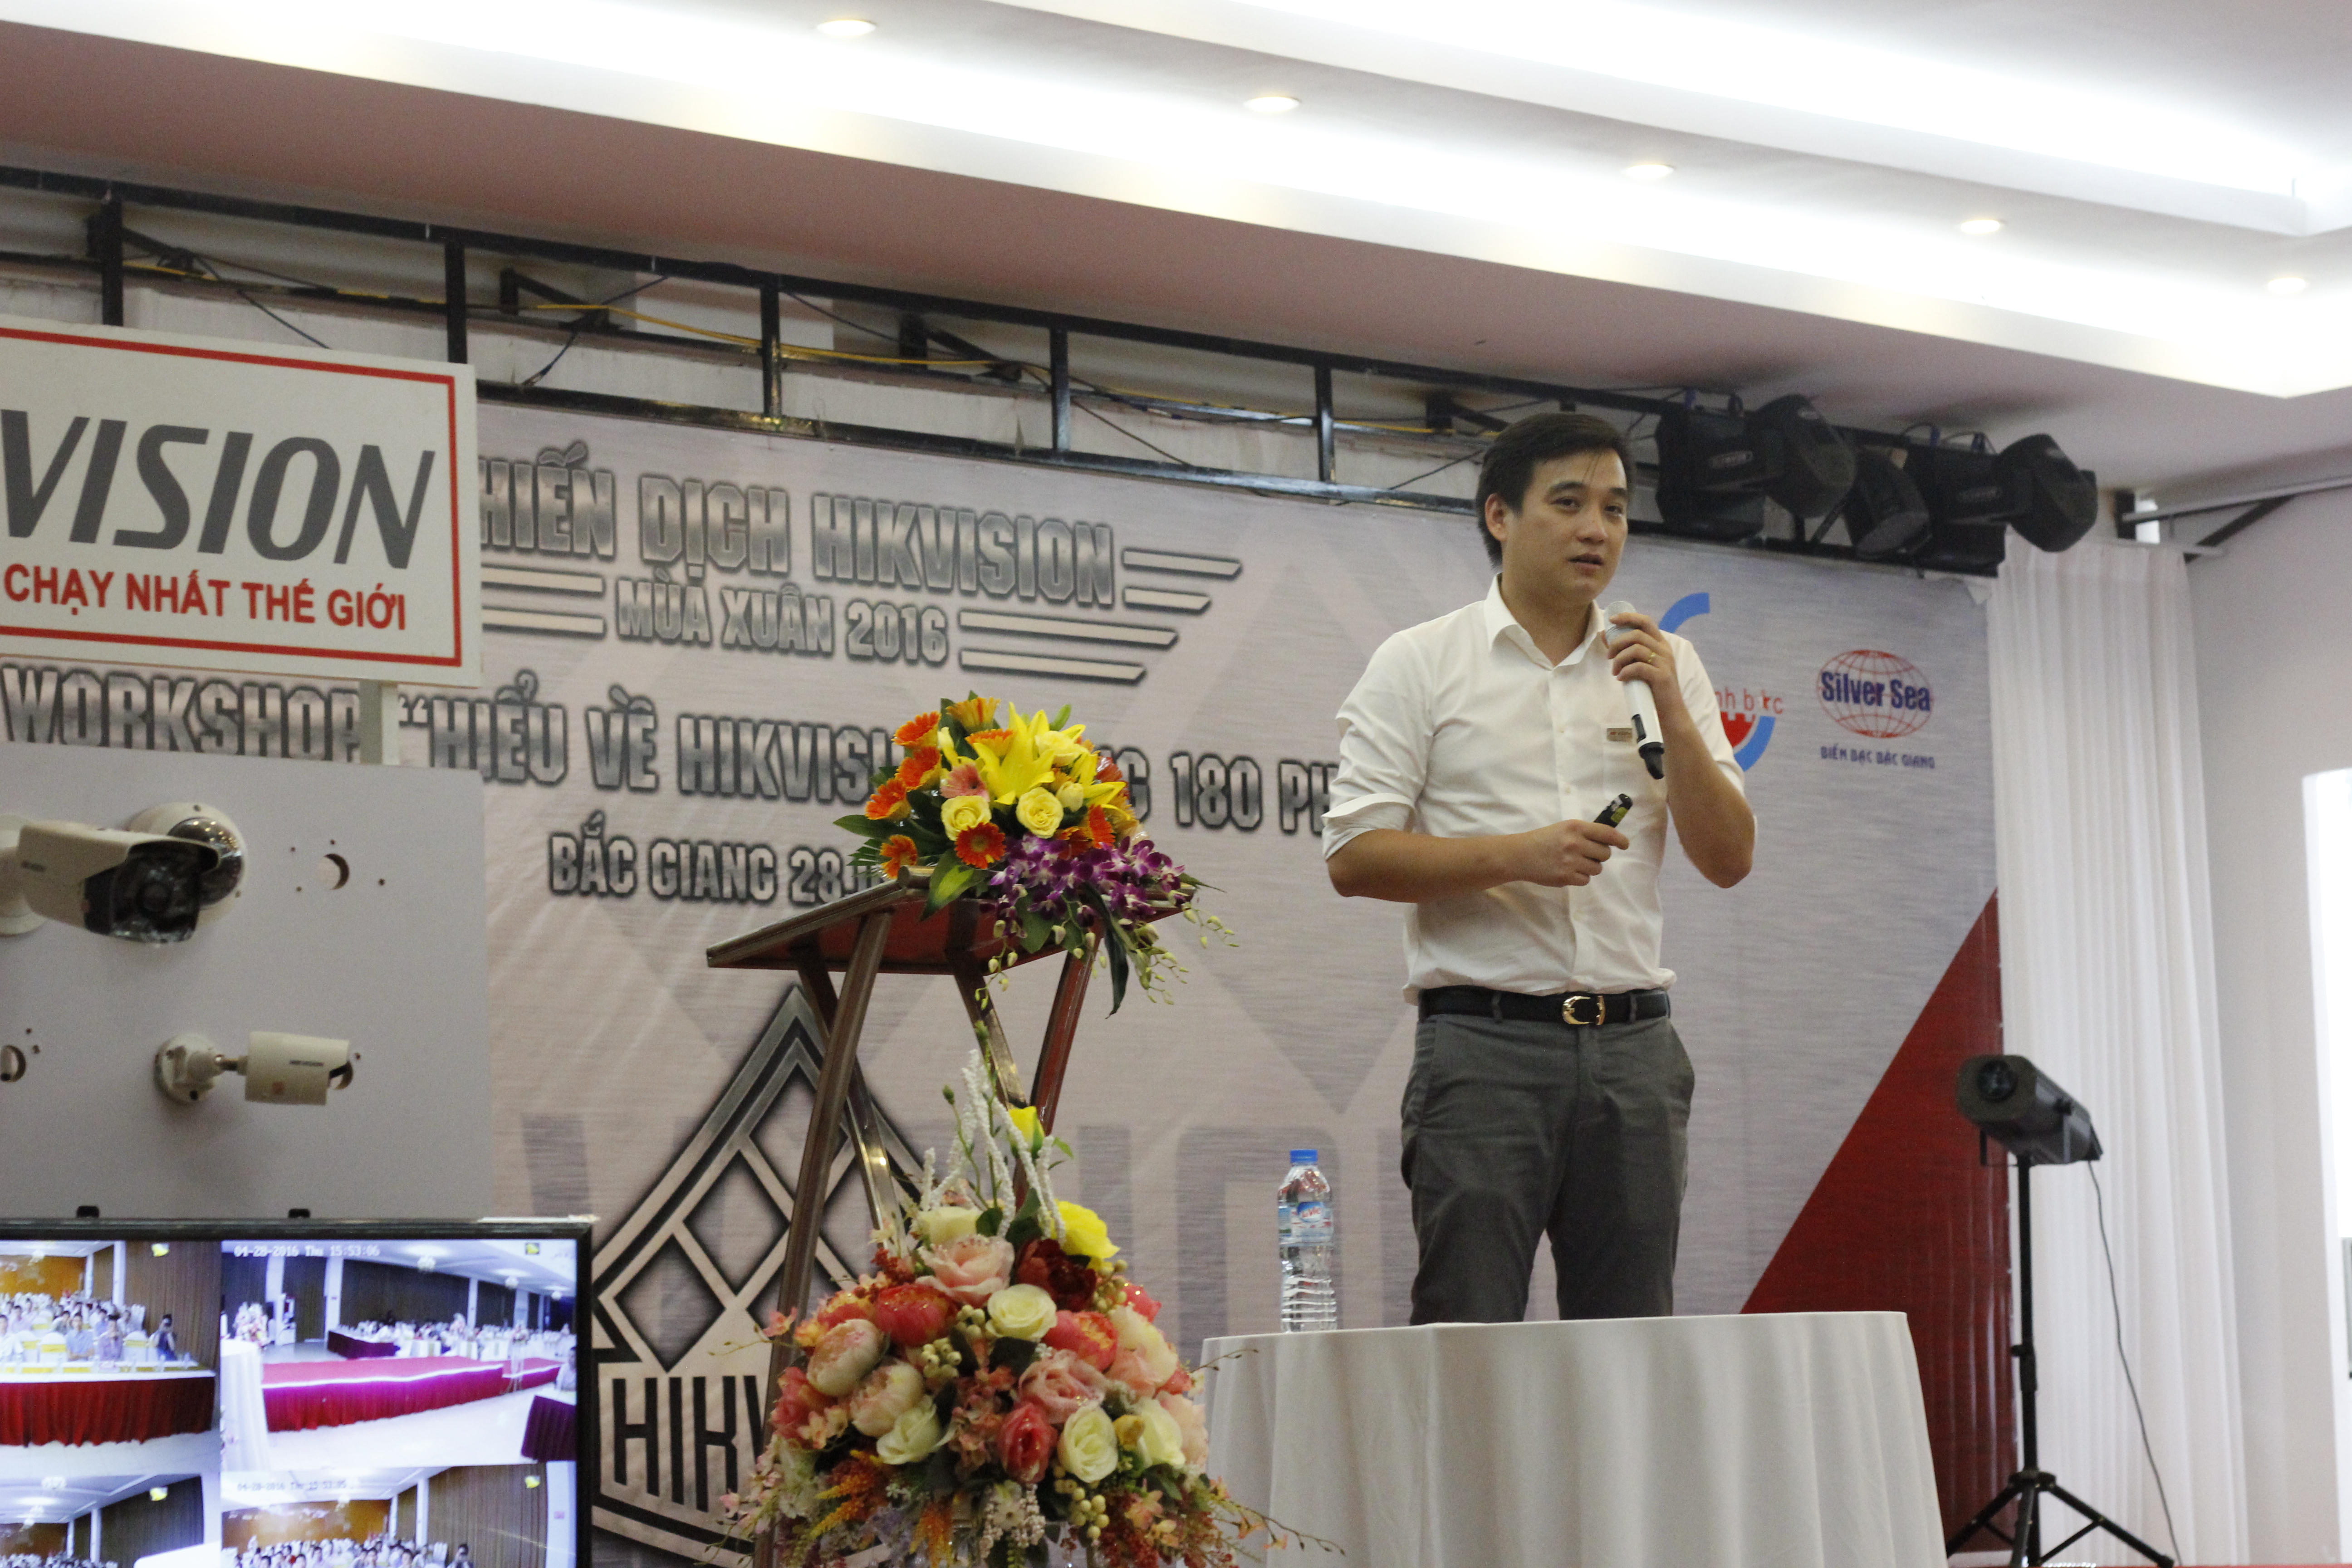 Đại diện Camera Phương Việt kế hoạch hợp tác và cơ hội kinh doanh HIKVISION dành cho thị trường Bắc Giang